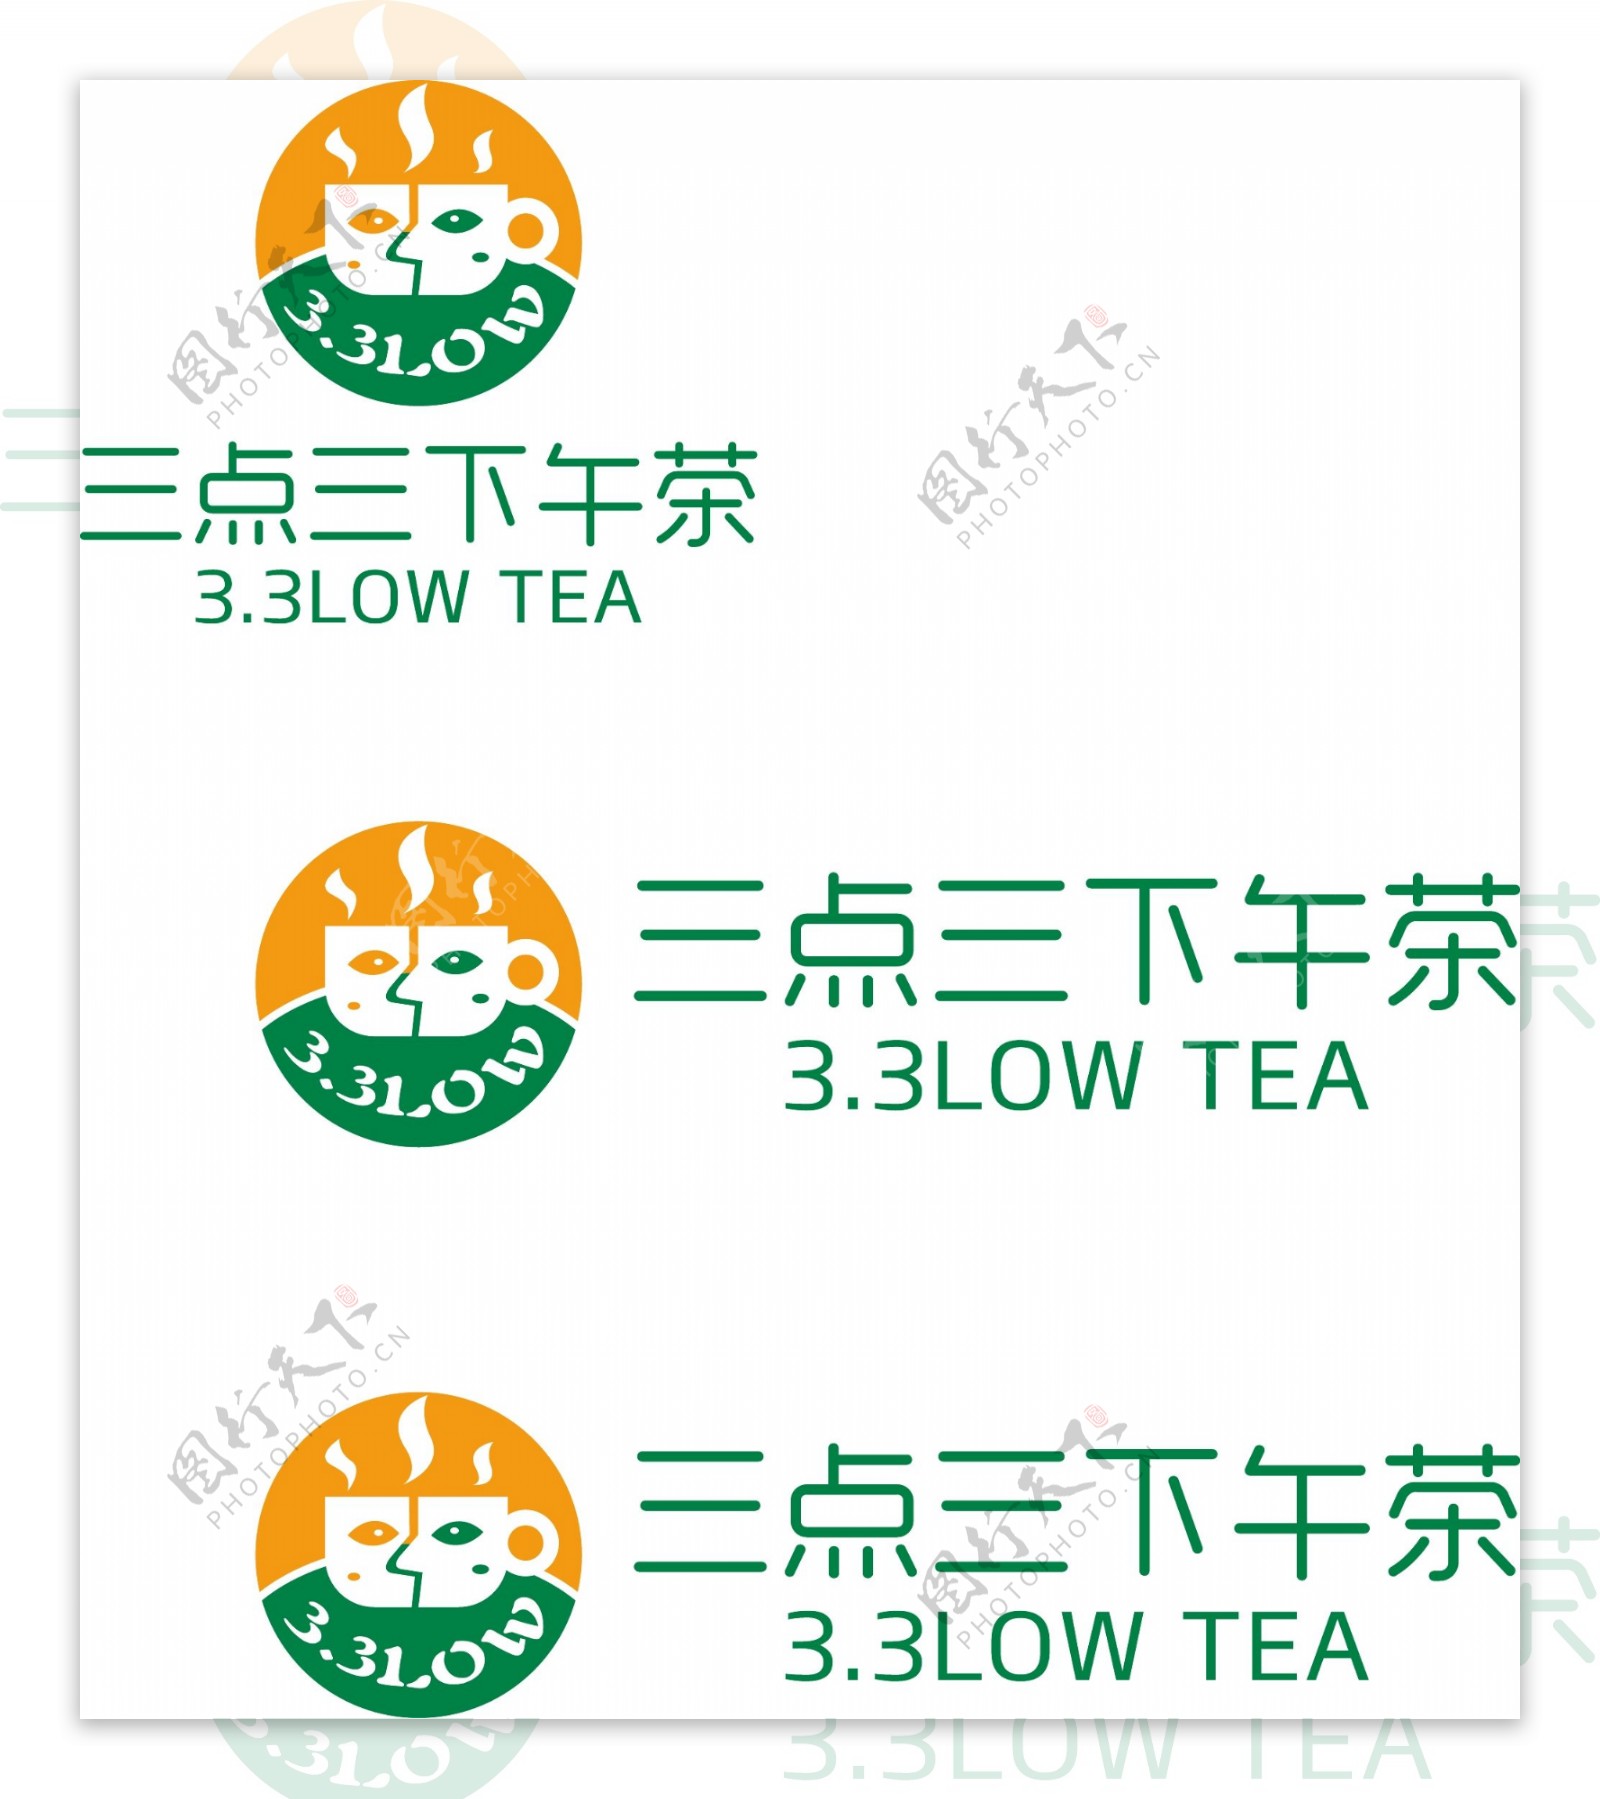 咖啡店茶品点图标制作